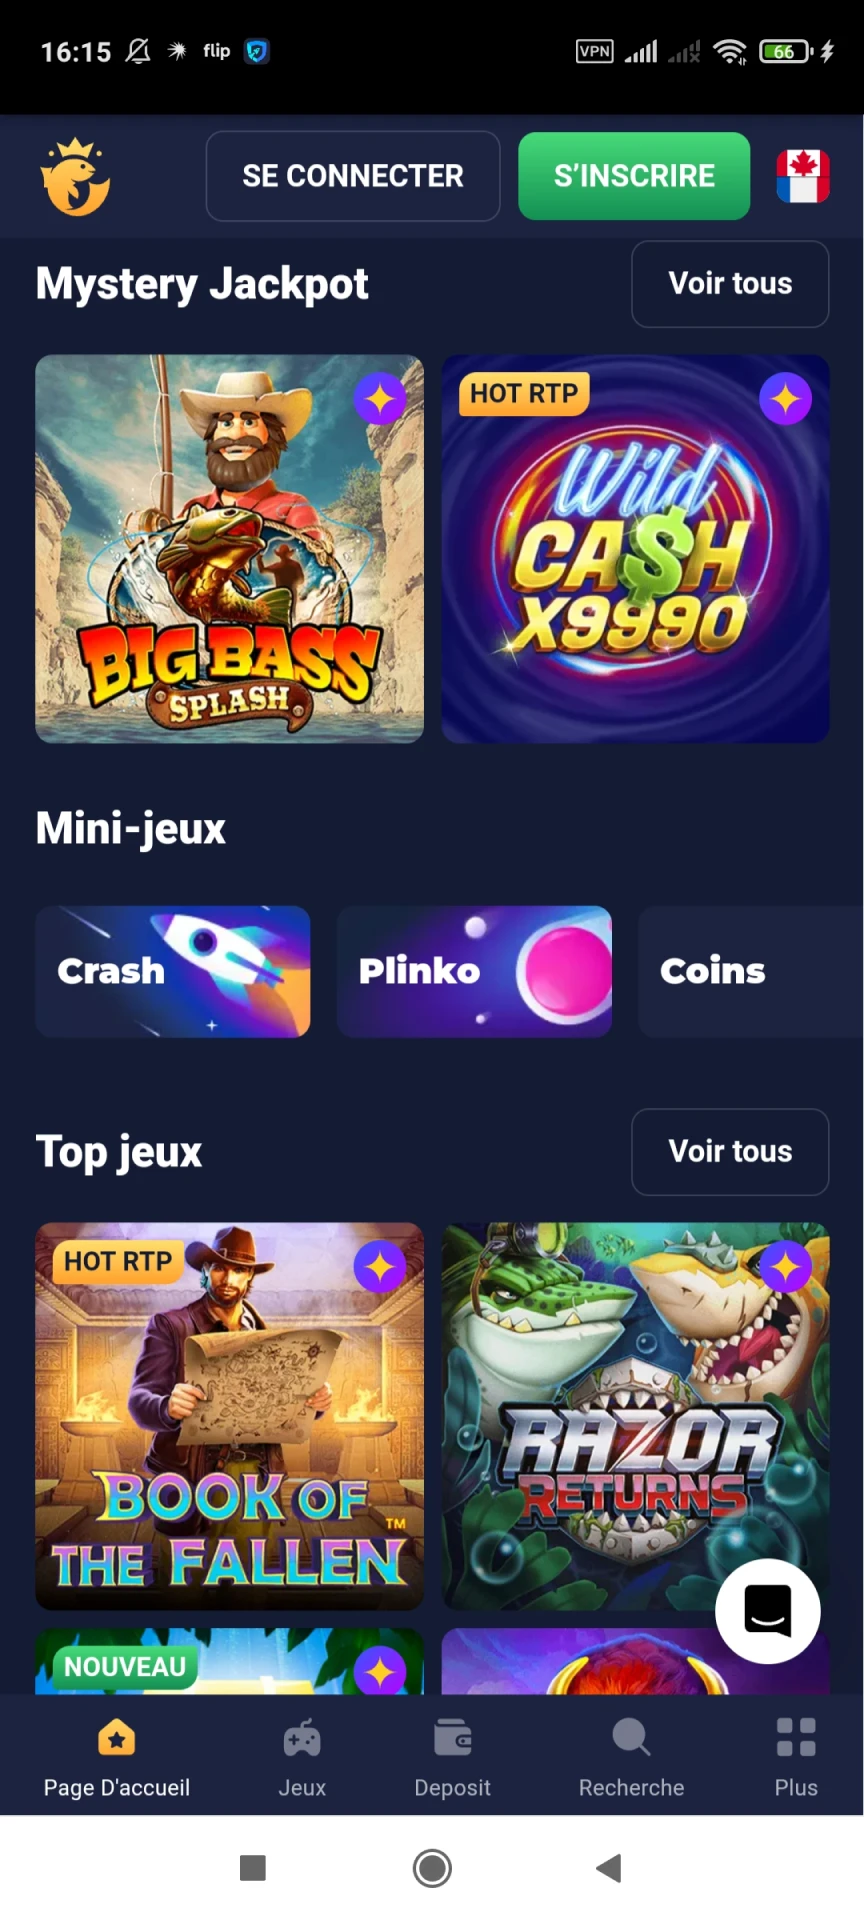 Visitez la page des jeux de l'application Joo Casino.